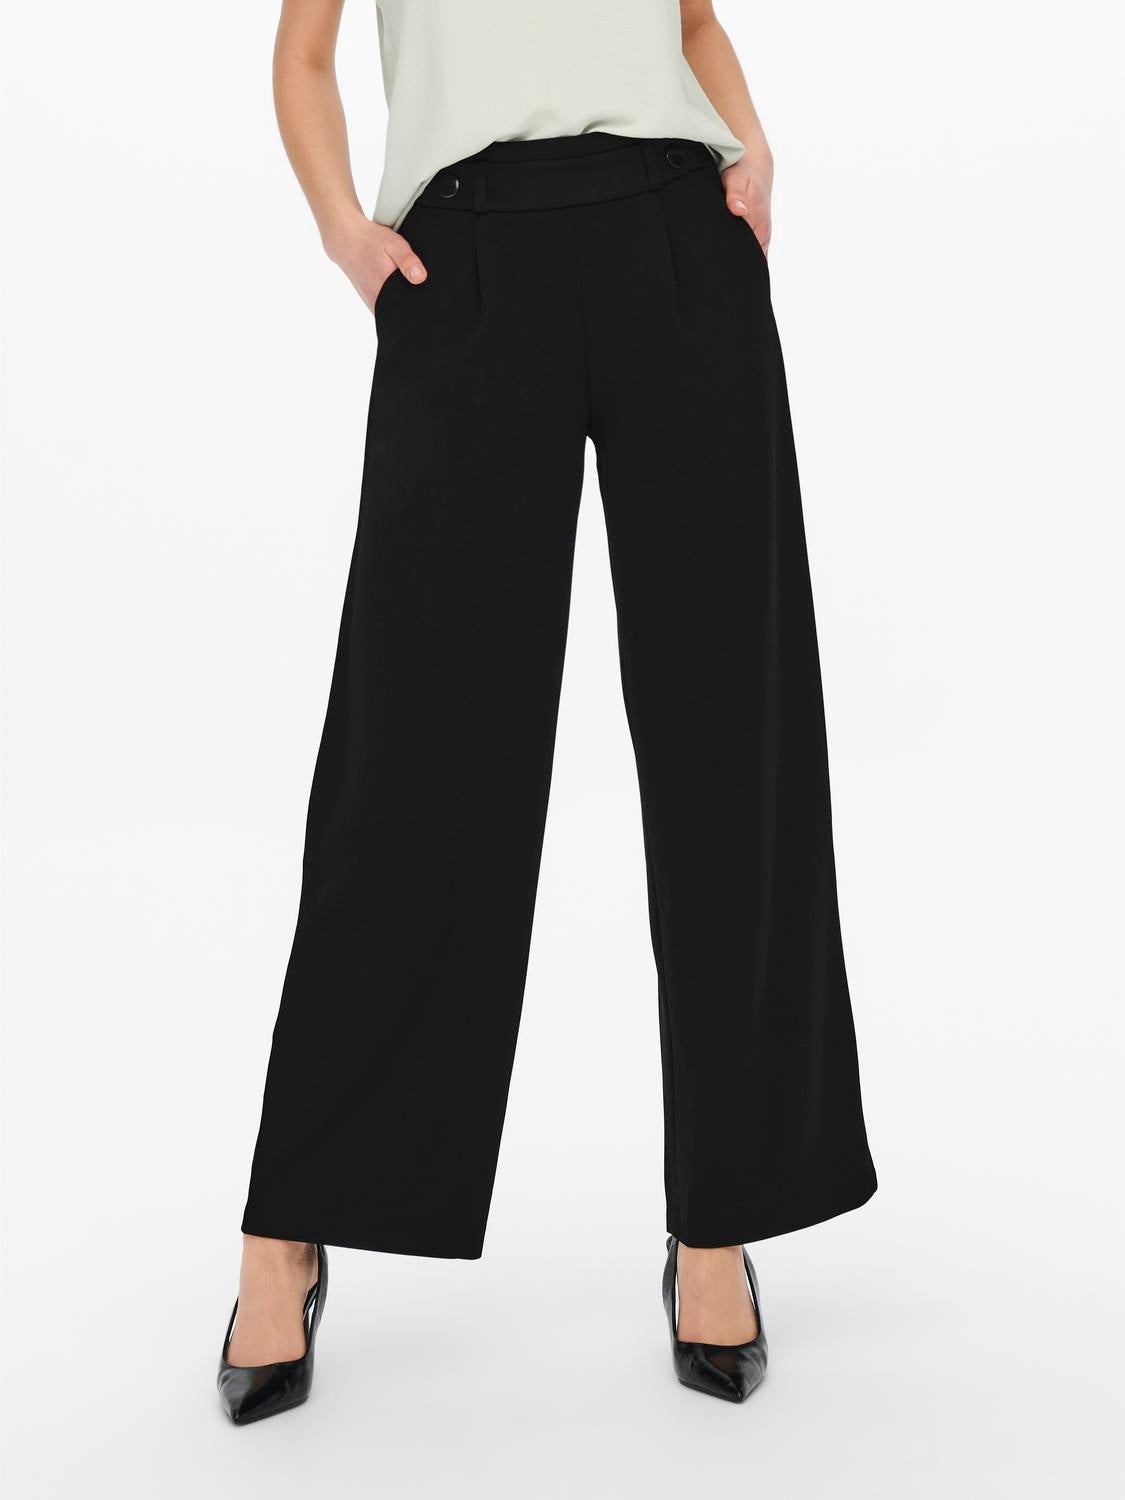 Buy Beige Trousers  Pants for Women by Fig Online  Ajiocom